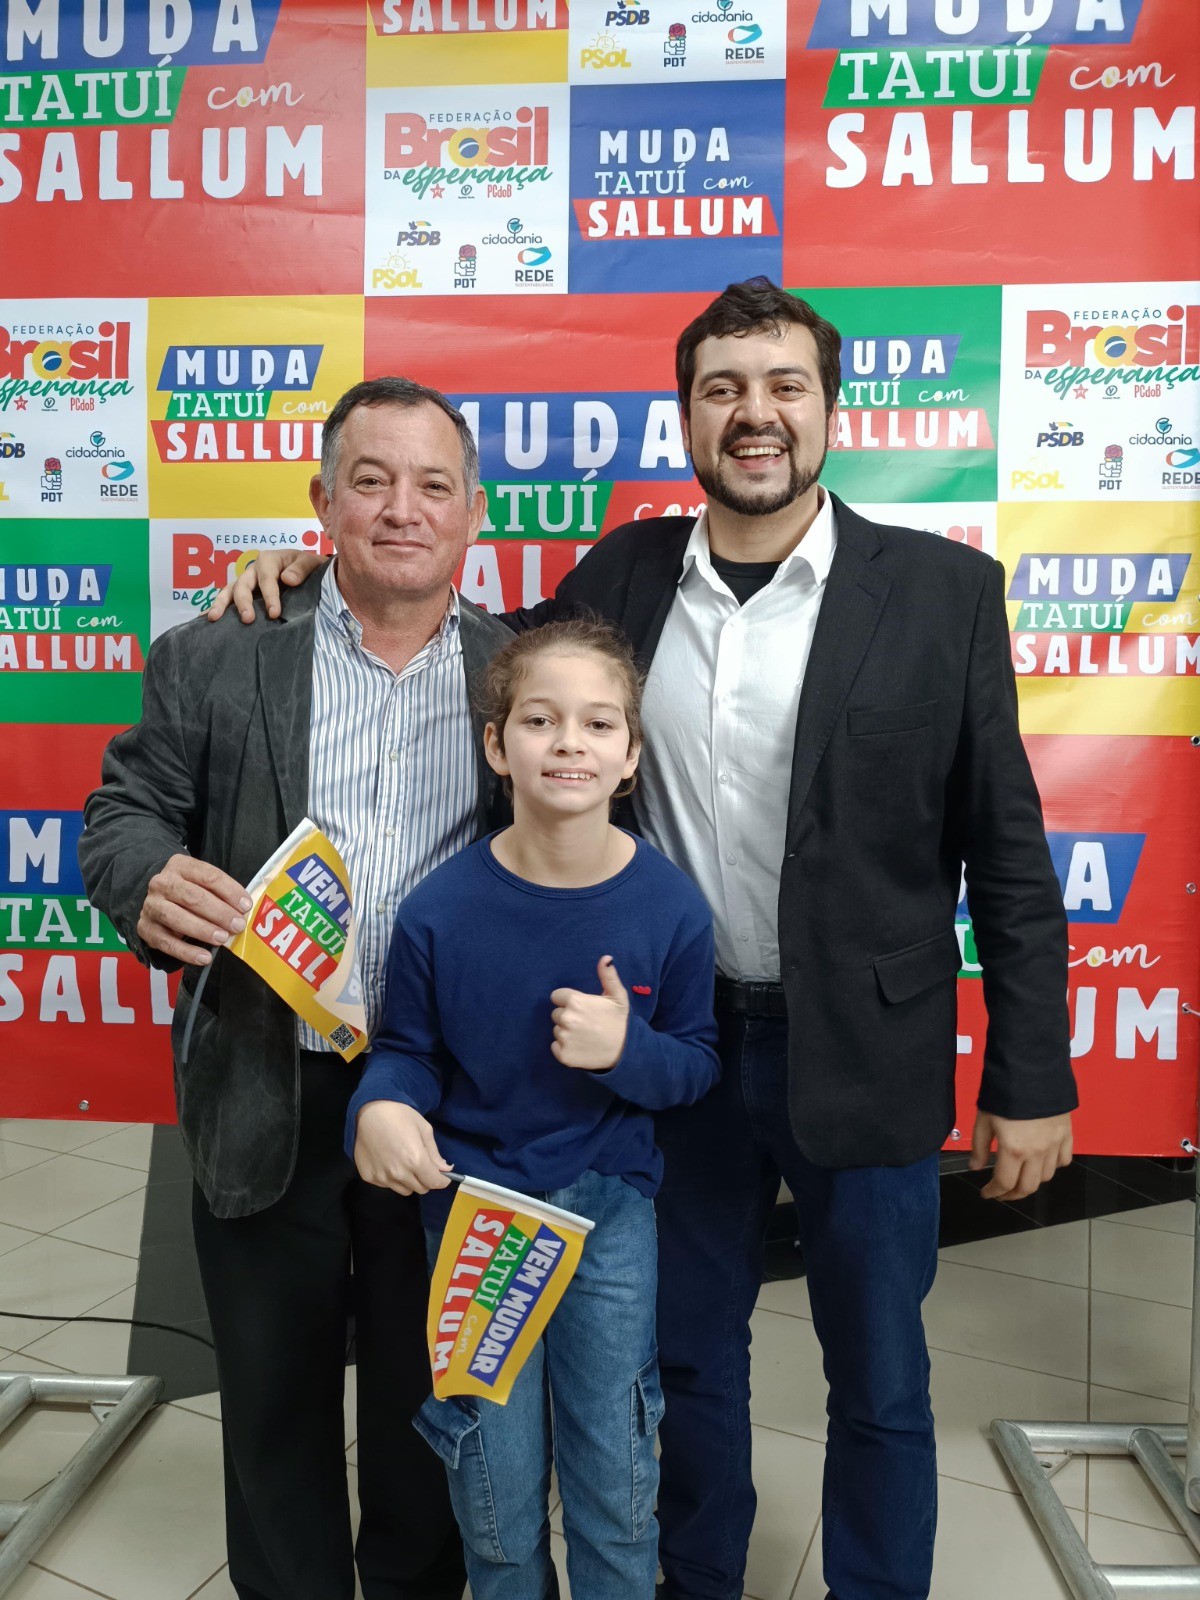 PT oficializa candidatura de Eduardo Sallum à Prefeitura de Tatuí